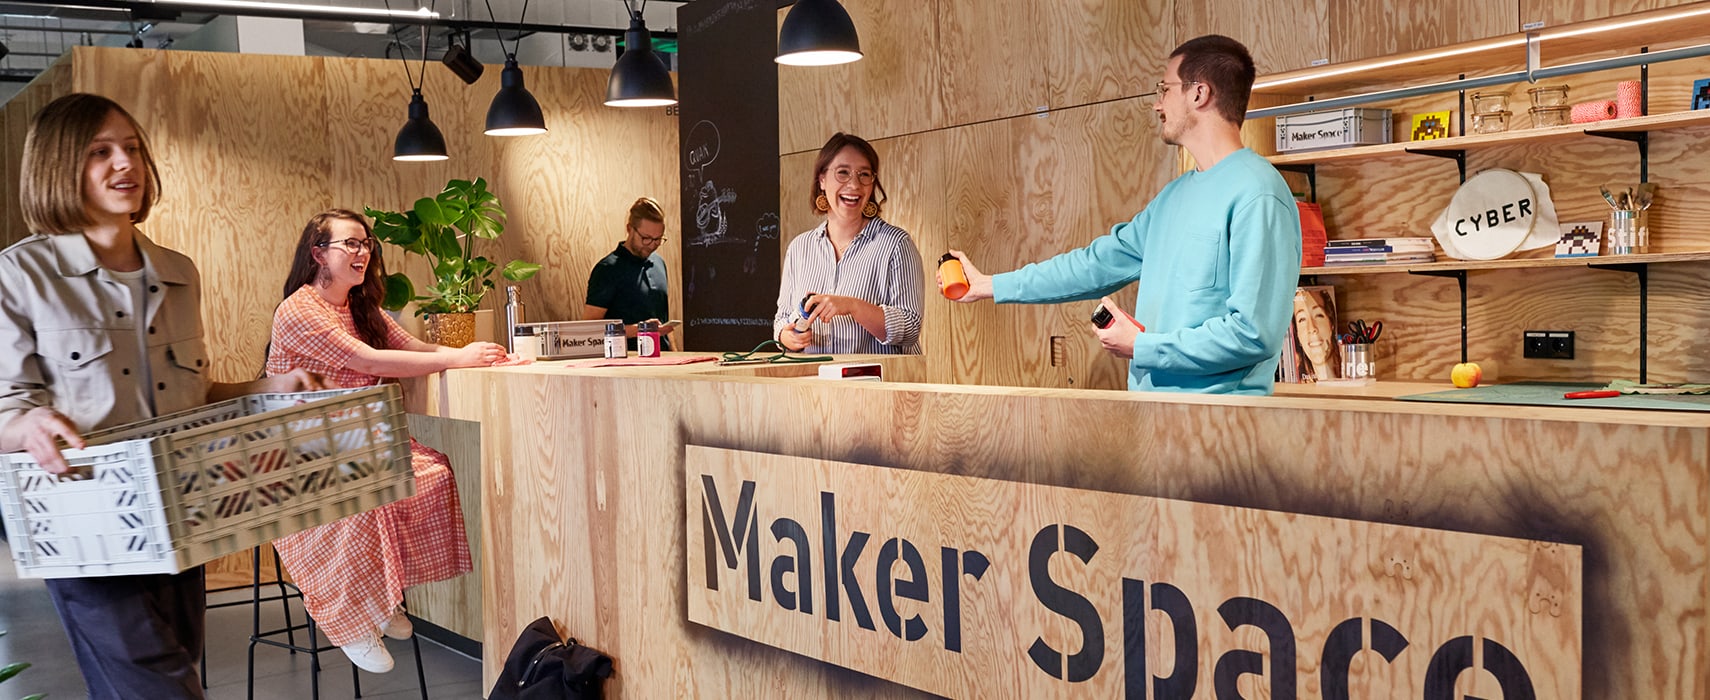 Maker Space Tresen mit Menschen